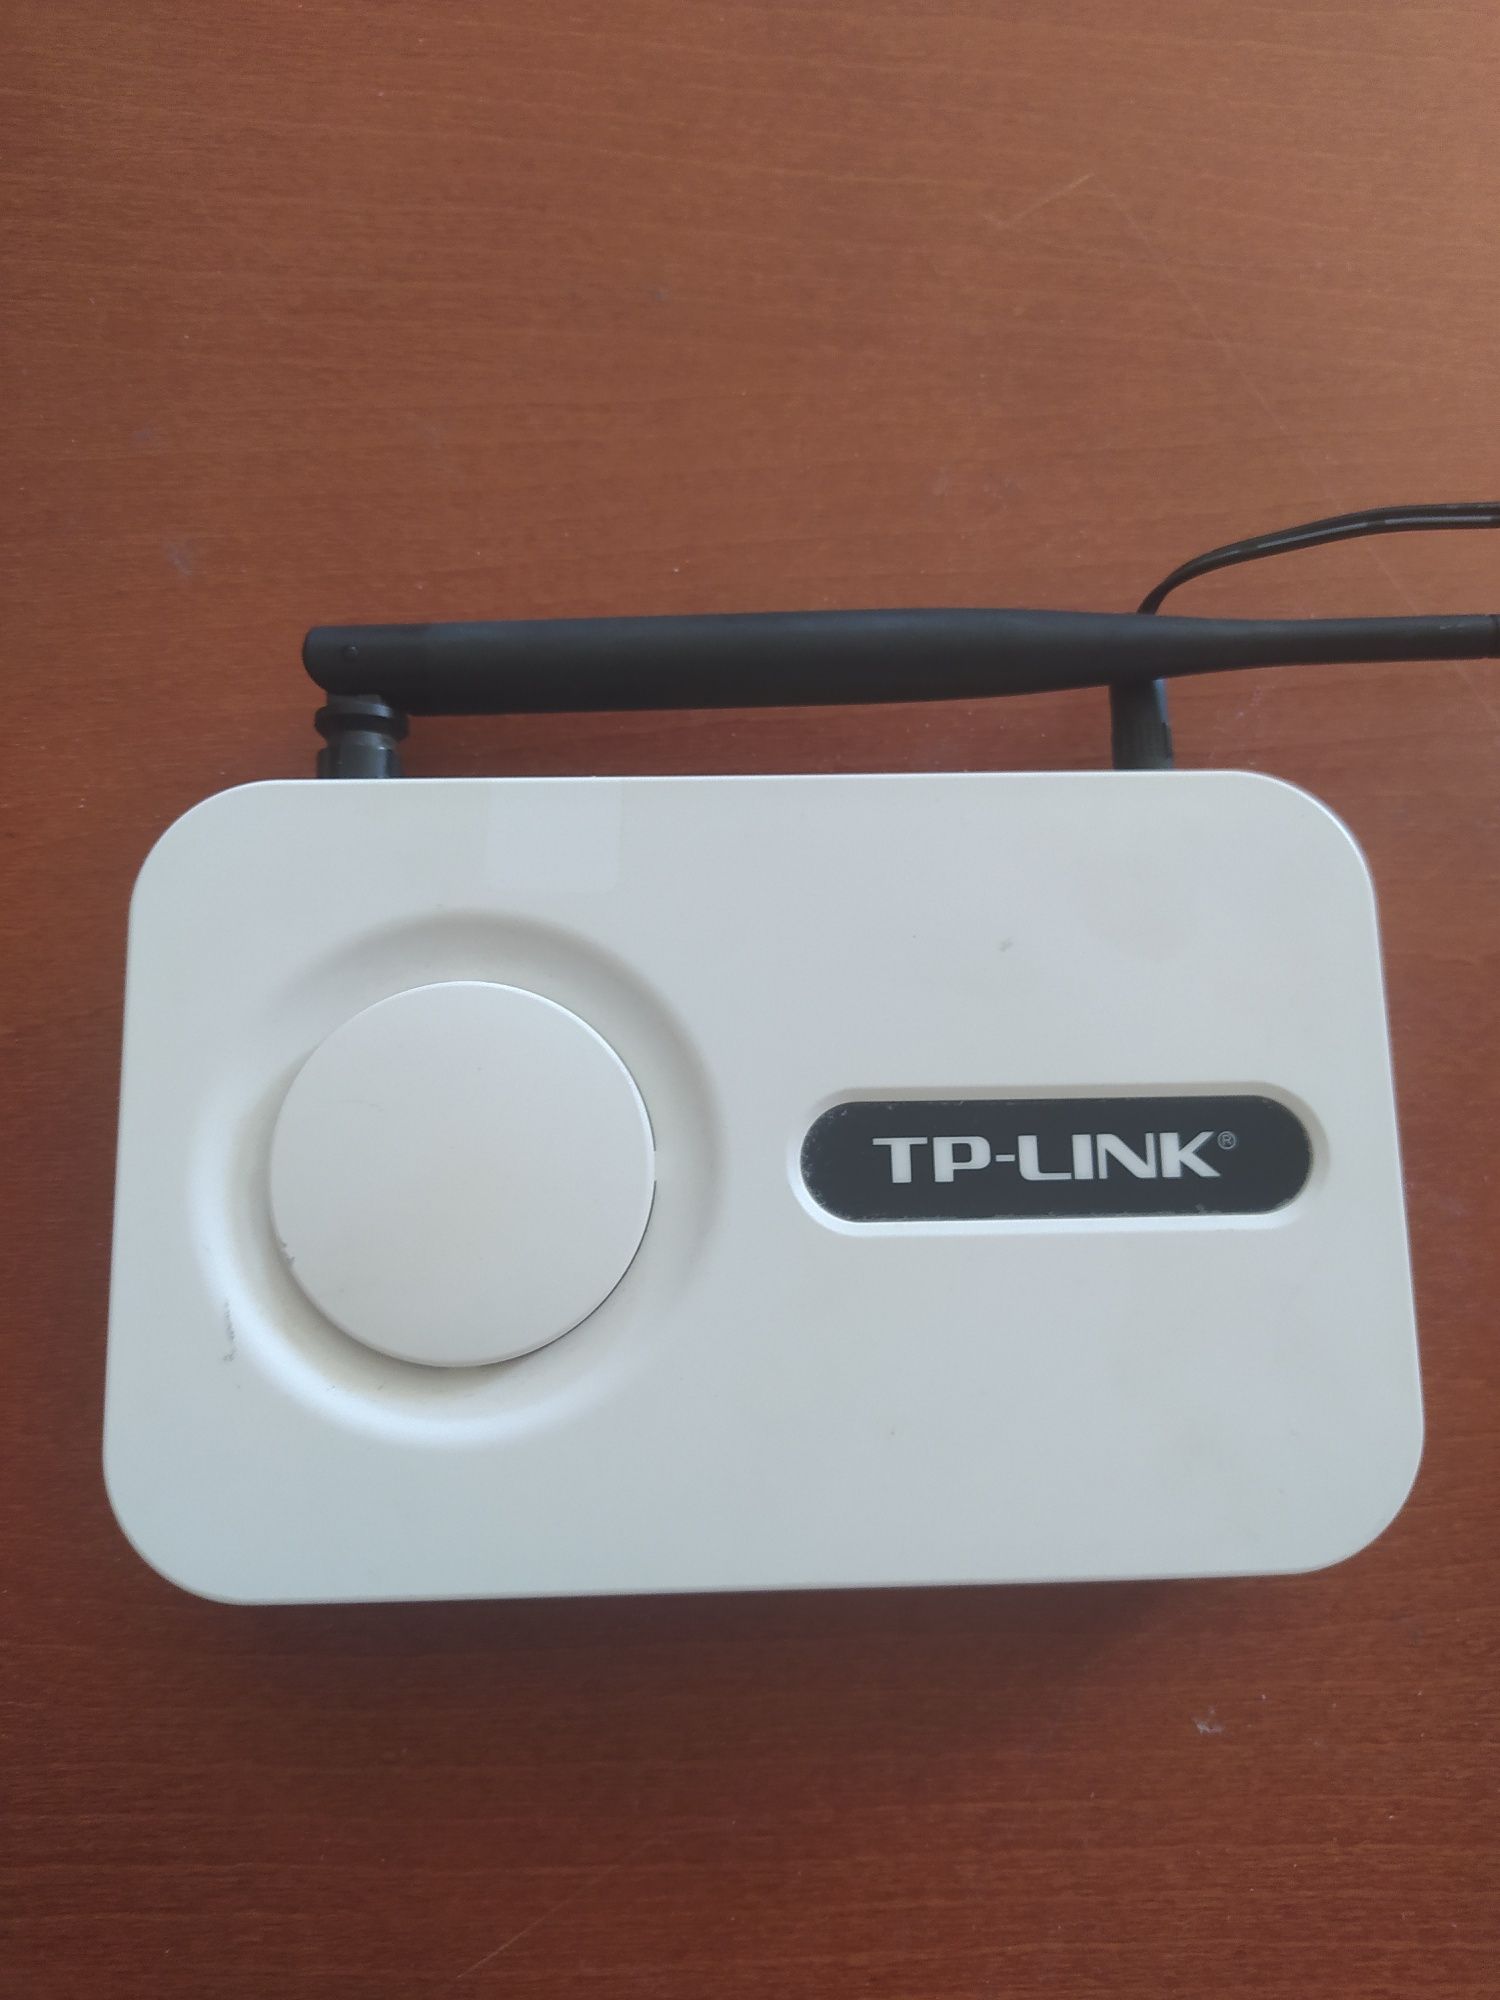 Router Tp- link model TL-WR340G